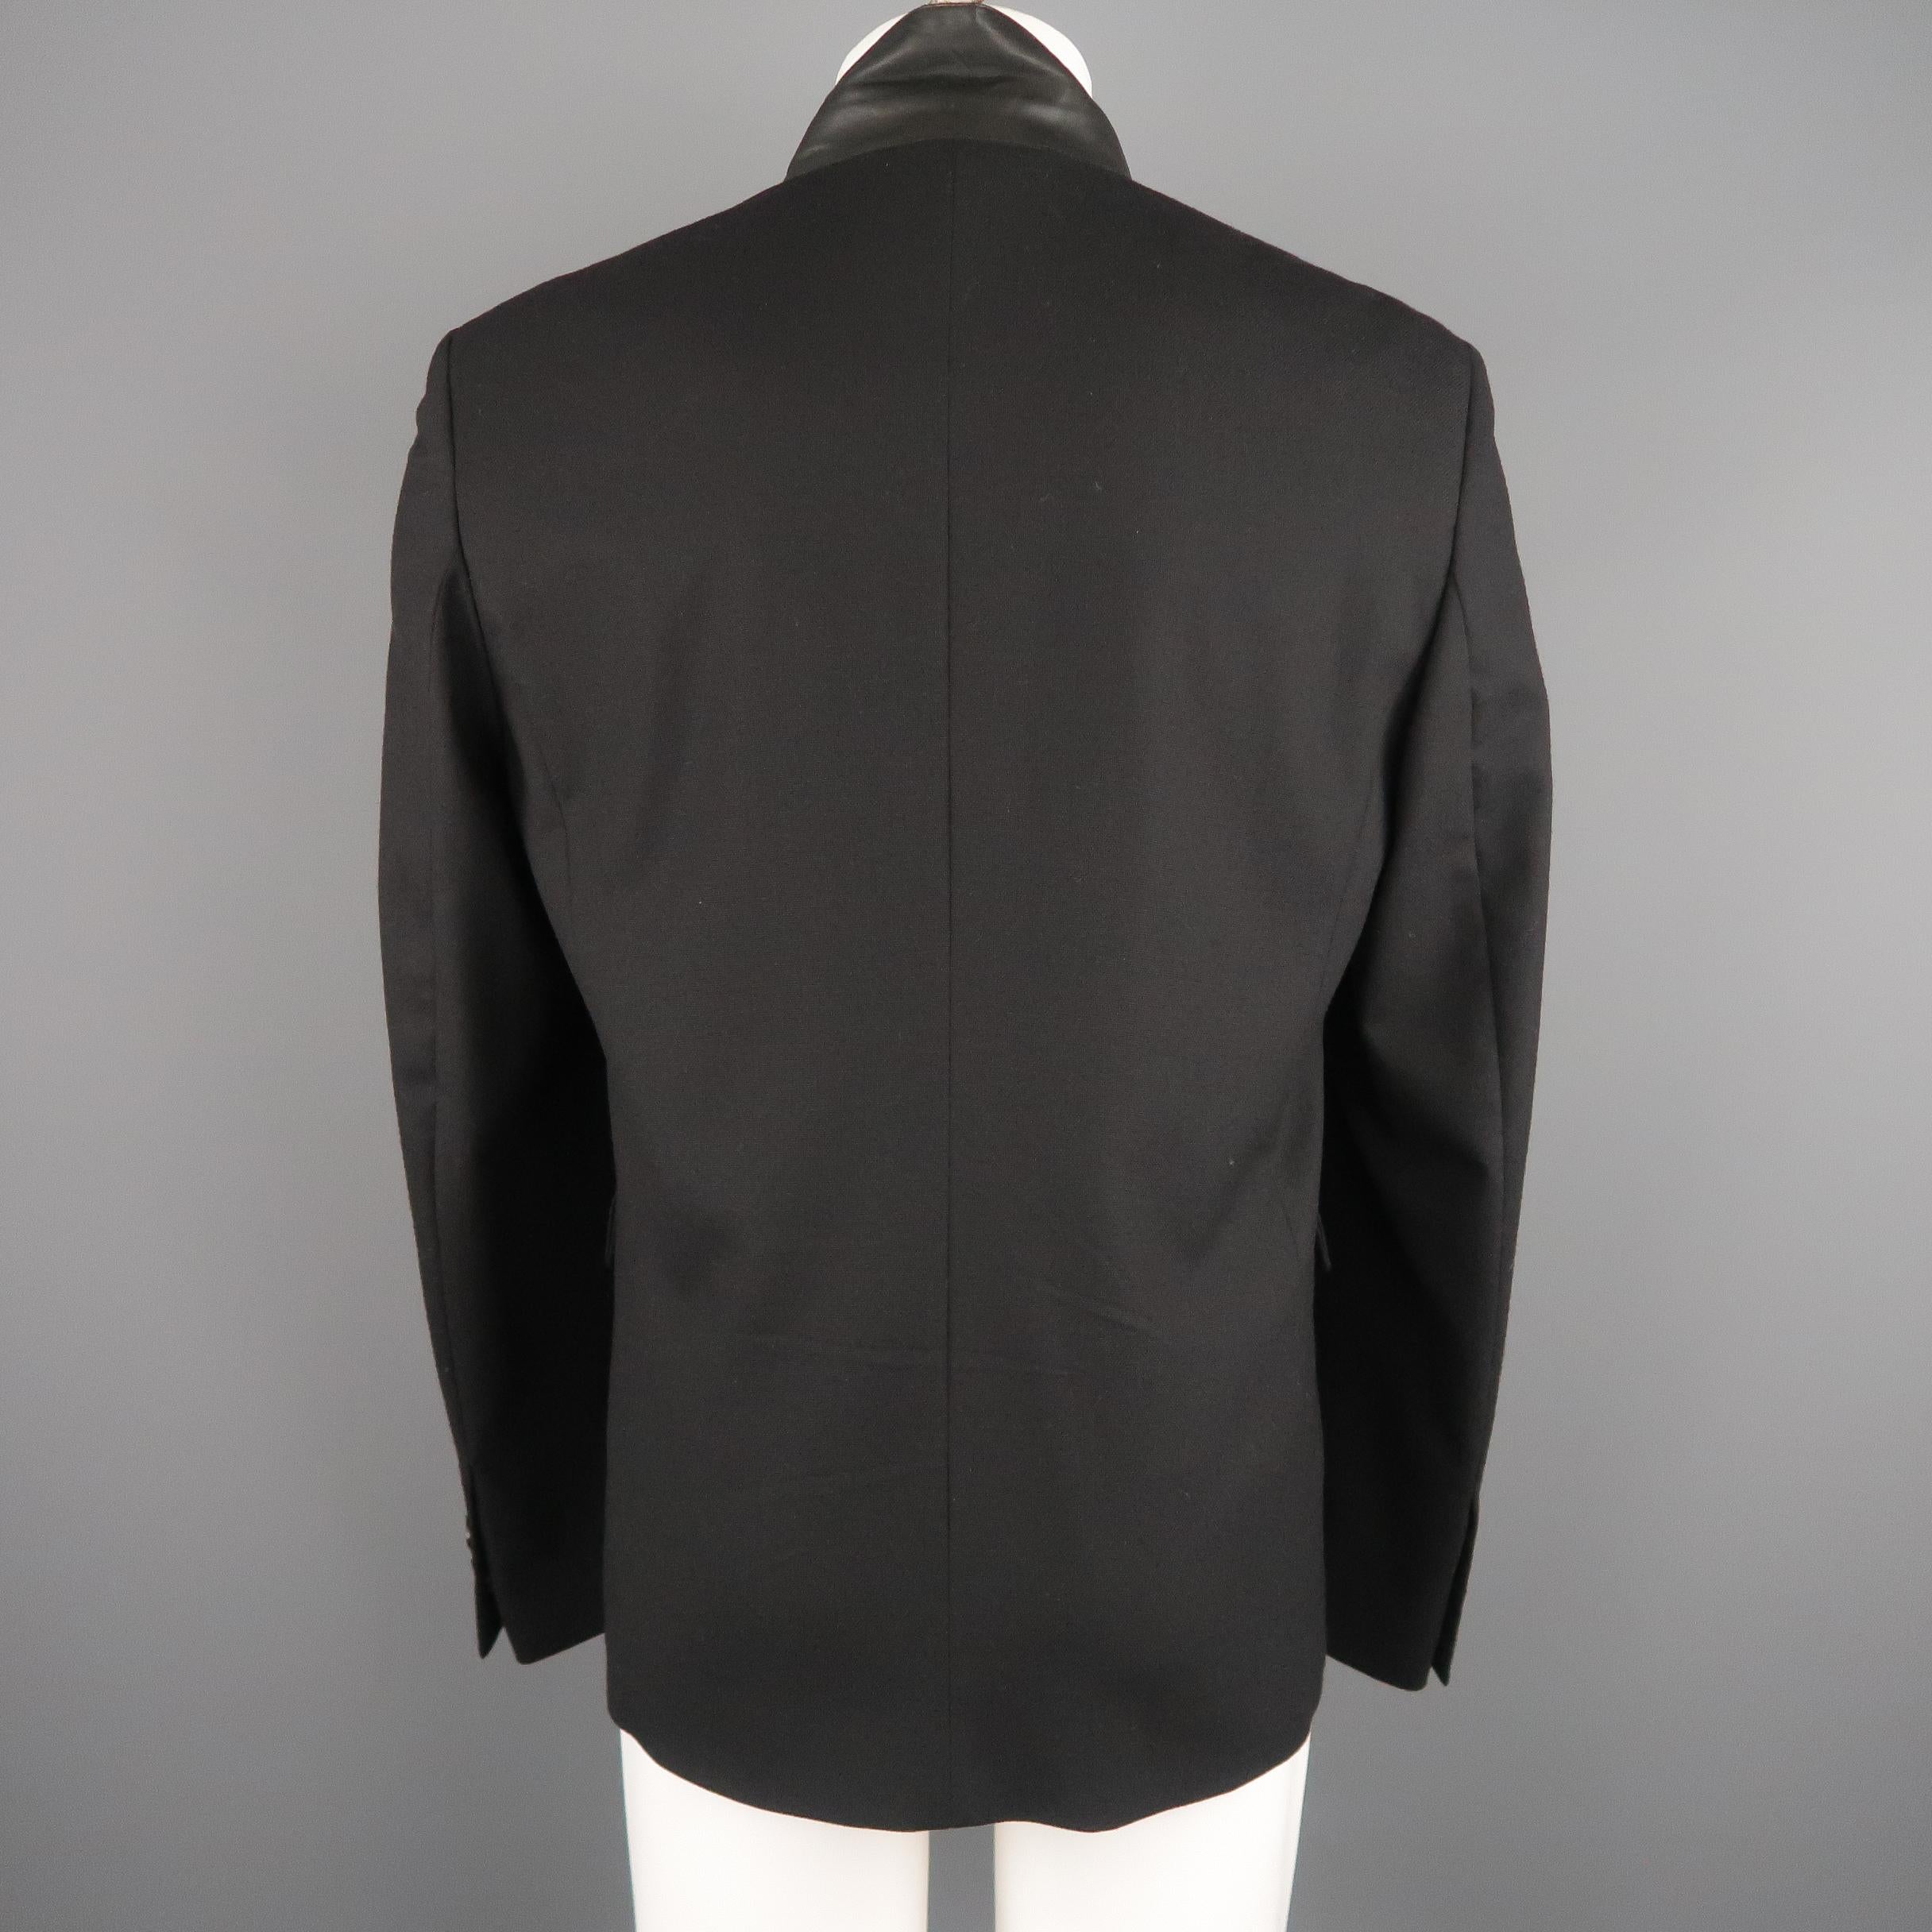 KRIS VAN ASSCHE 42 Short Black Wool Blend Sport Coat 1